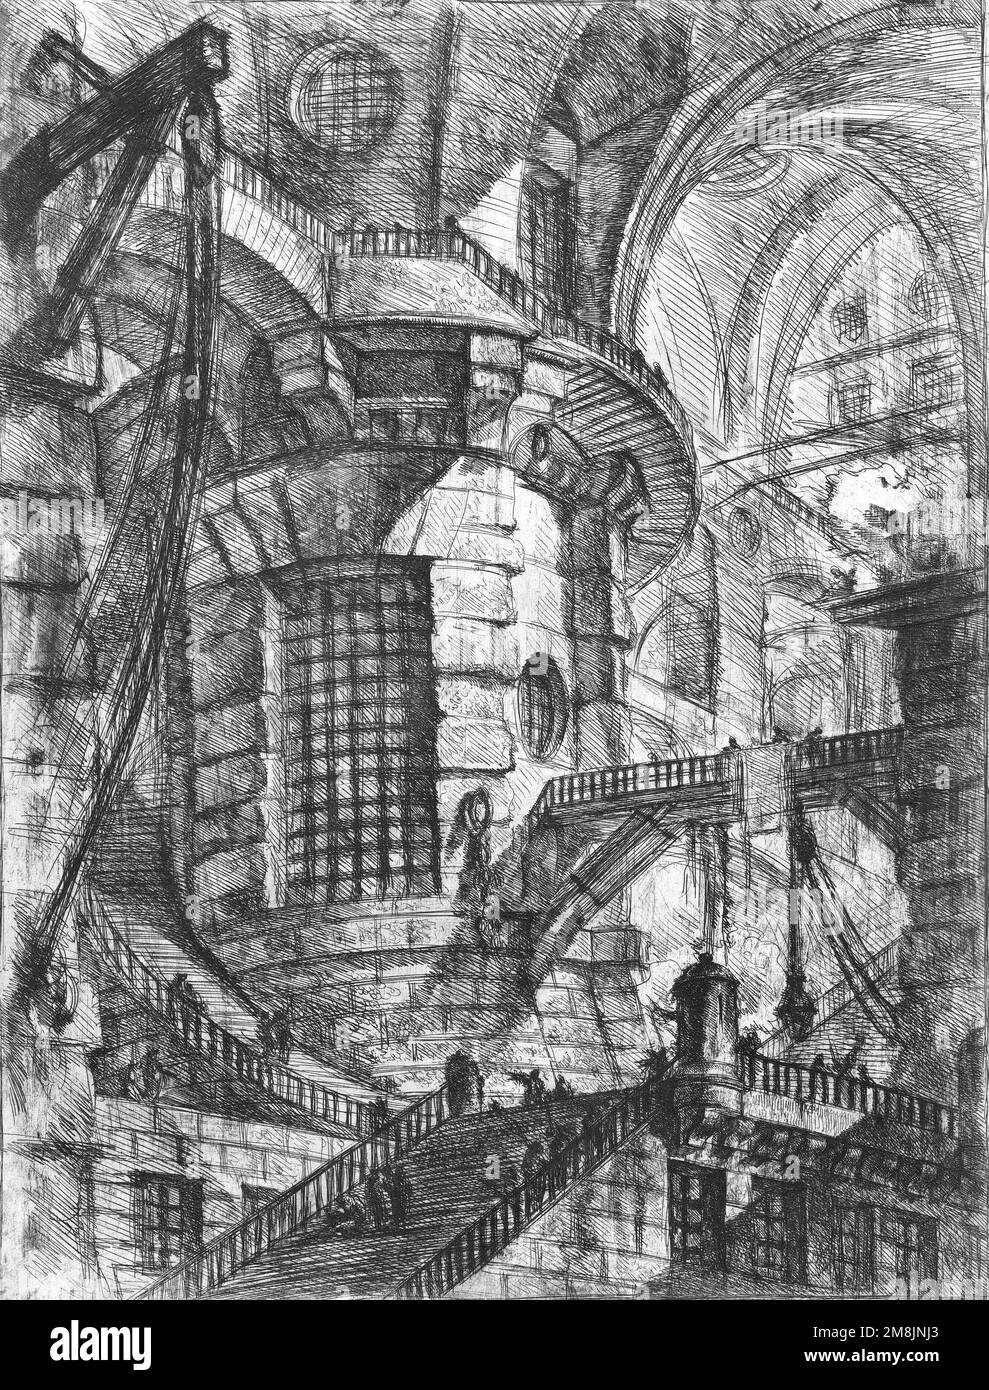 Piranesi (1720-1728). La Torre rotonda, da 'Carceri d'invenzione' (Prigioni immaginarie) di Giovanni Battista Piranesi, incisione/incisione, c. 1749/50 Foto Stock